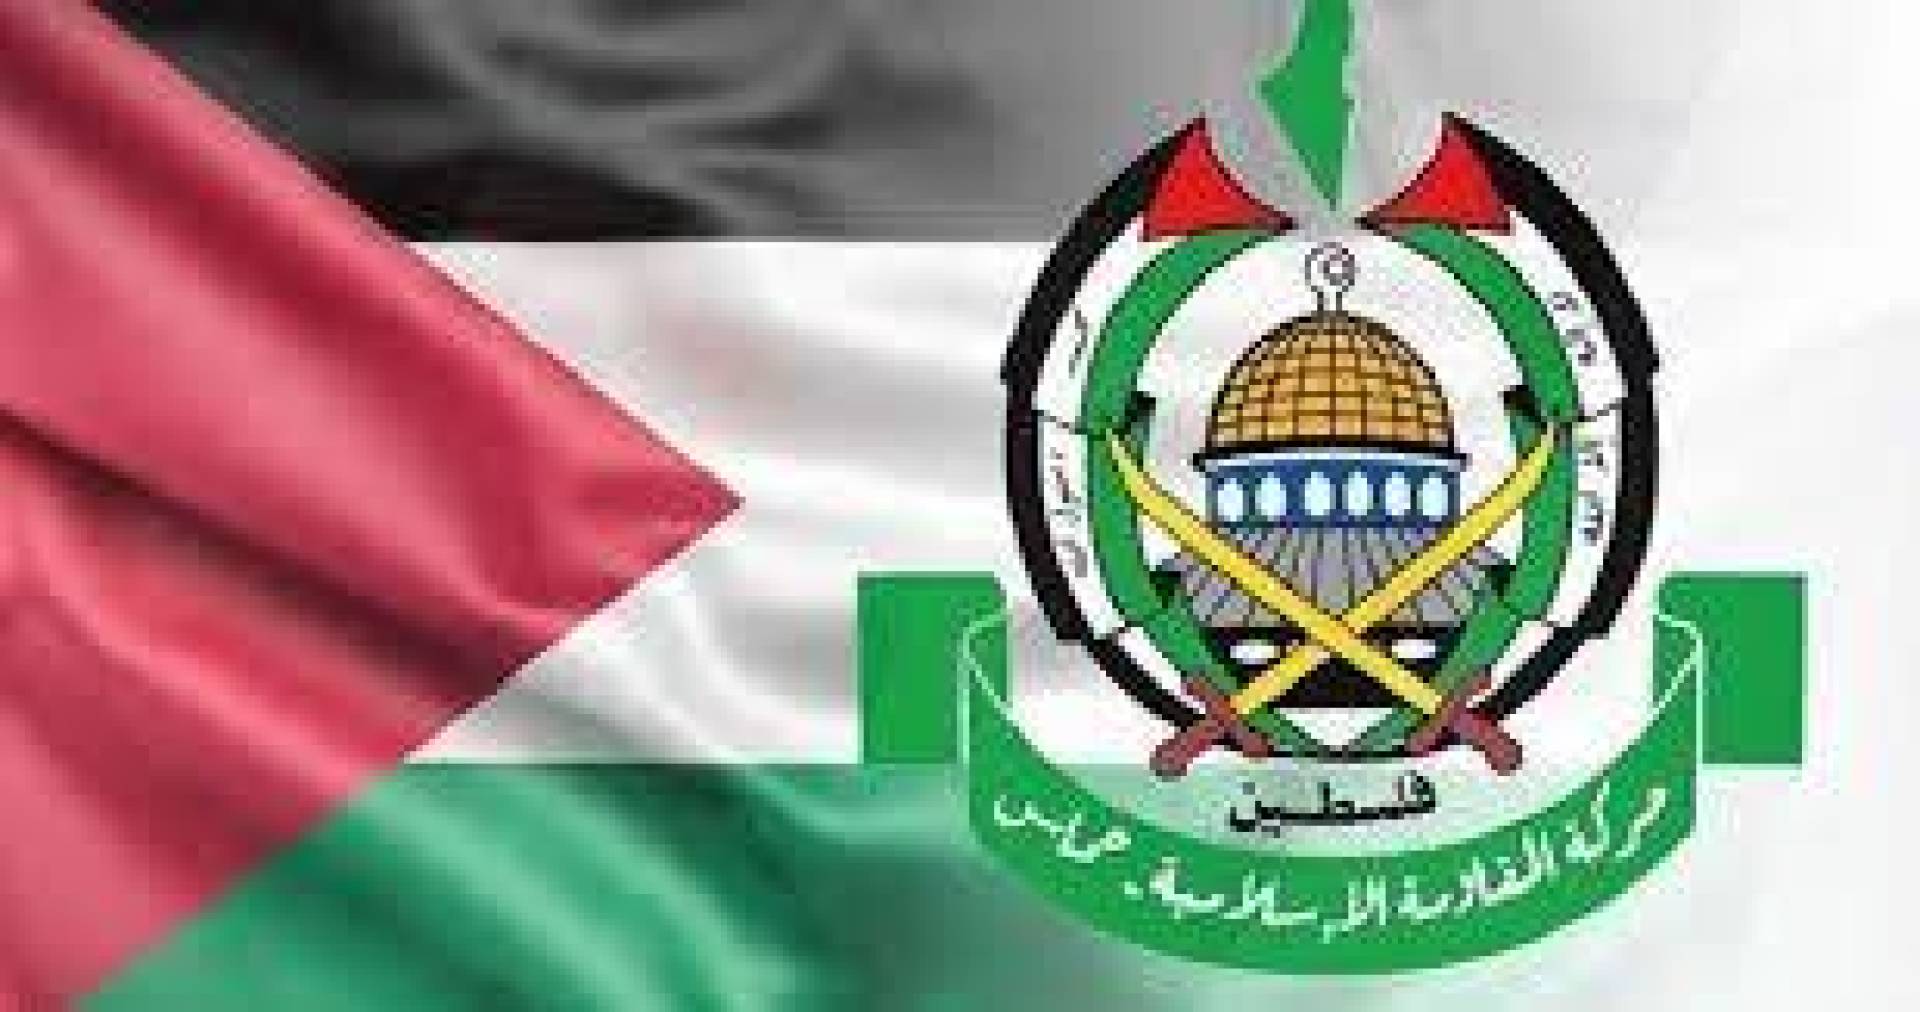 حماس: تصريحات بايدن حول وقف إطلاق النار انحياز أمريكي مع السياسة الإجرامية للنازيين الصهاينة